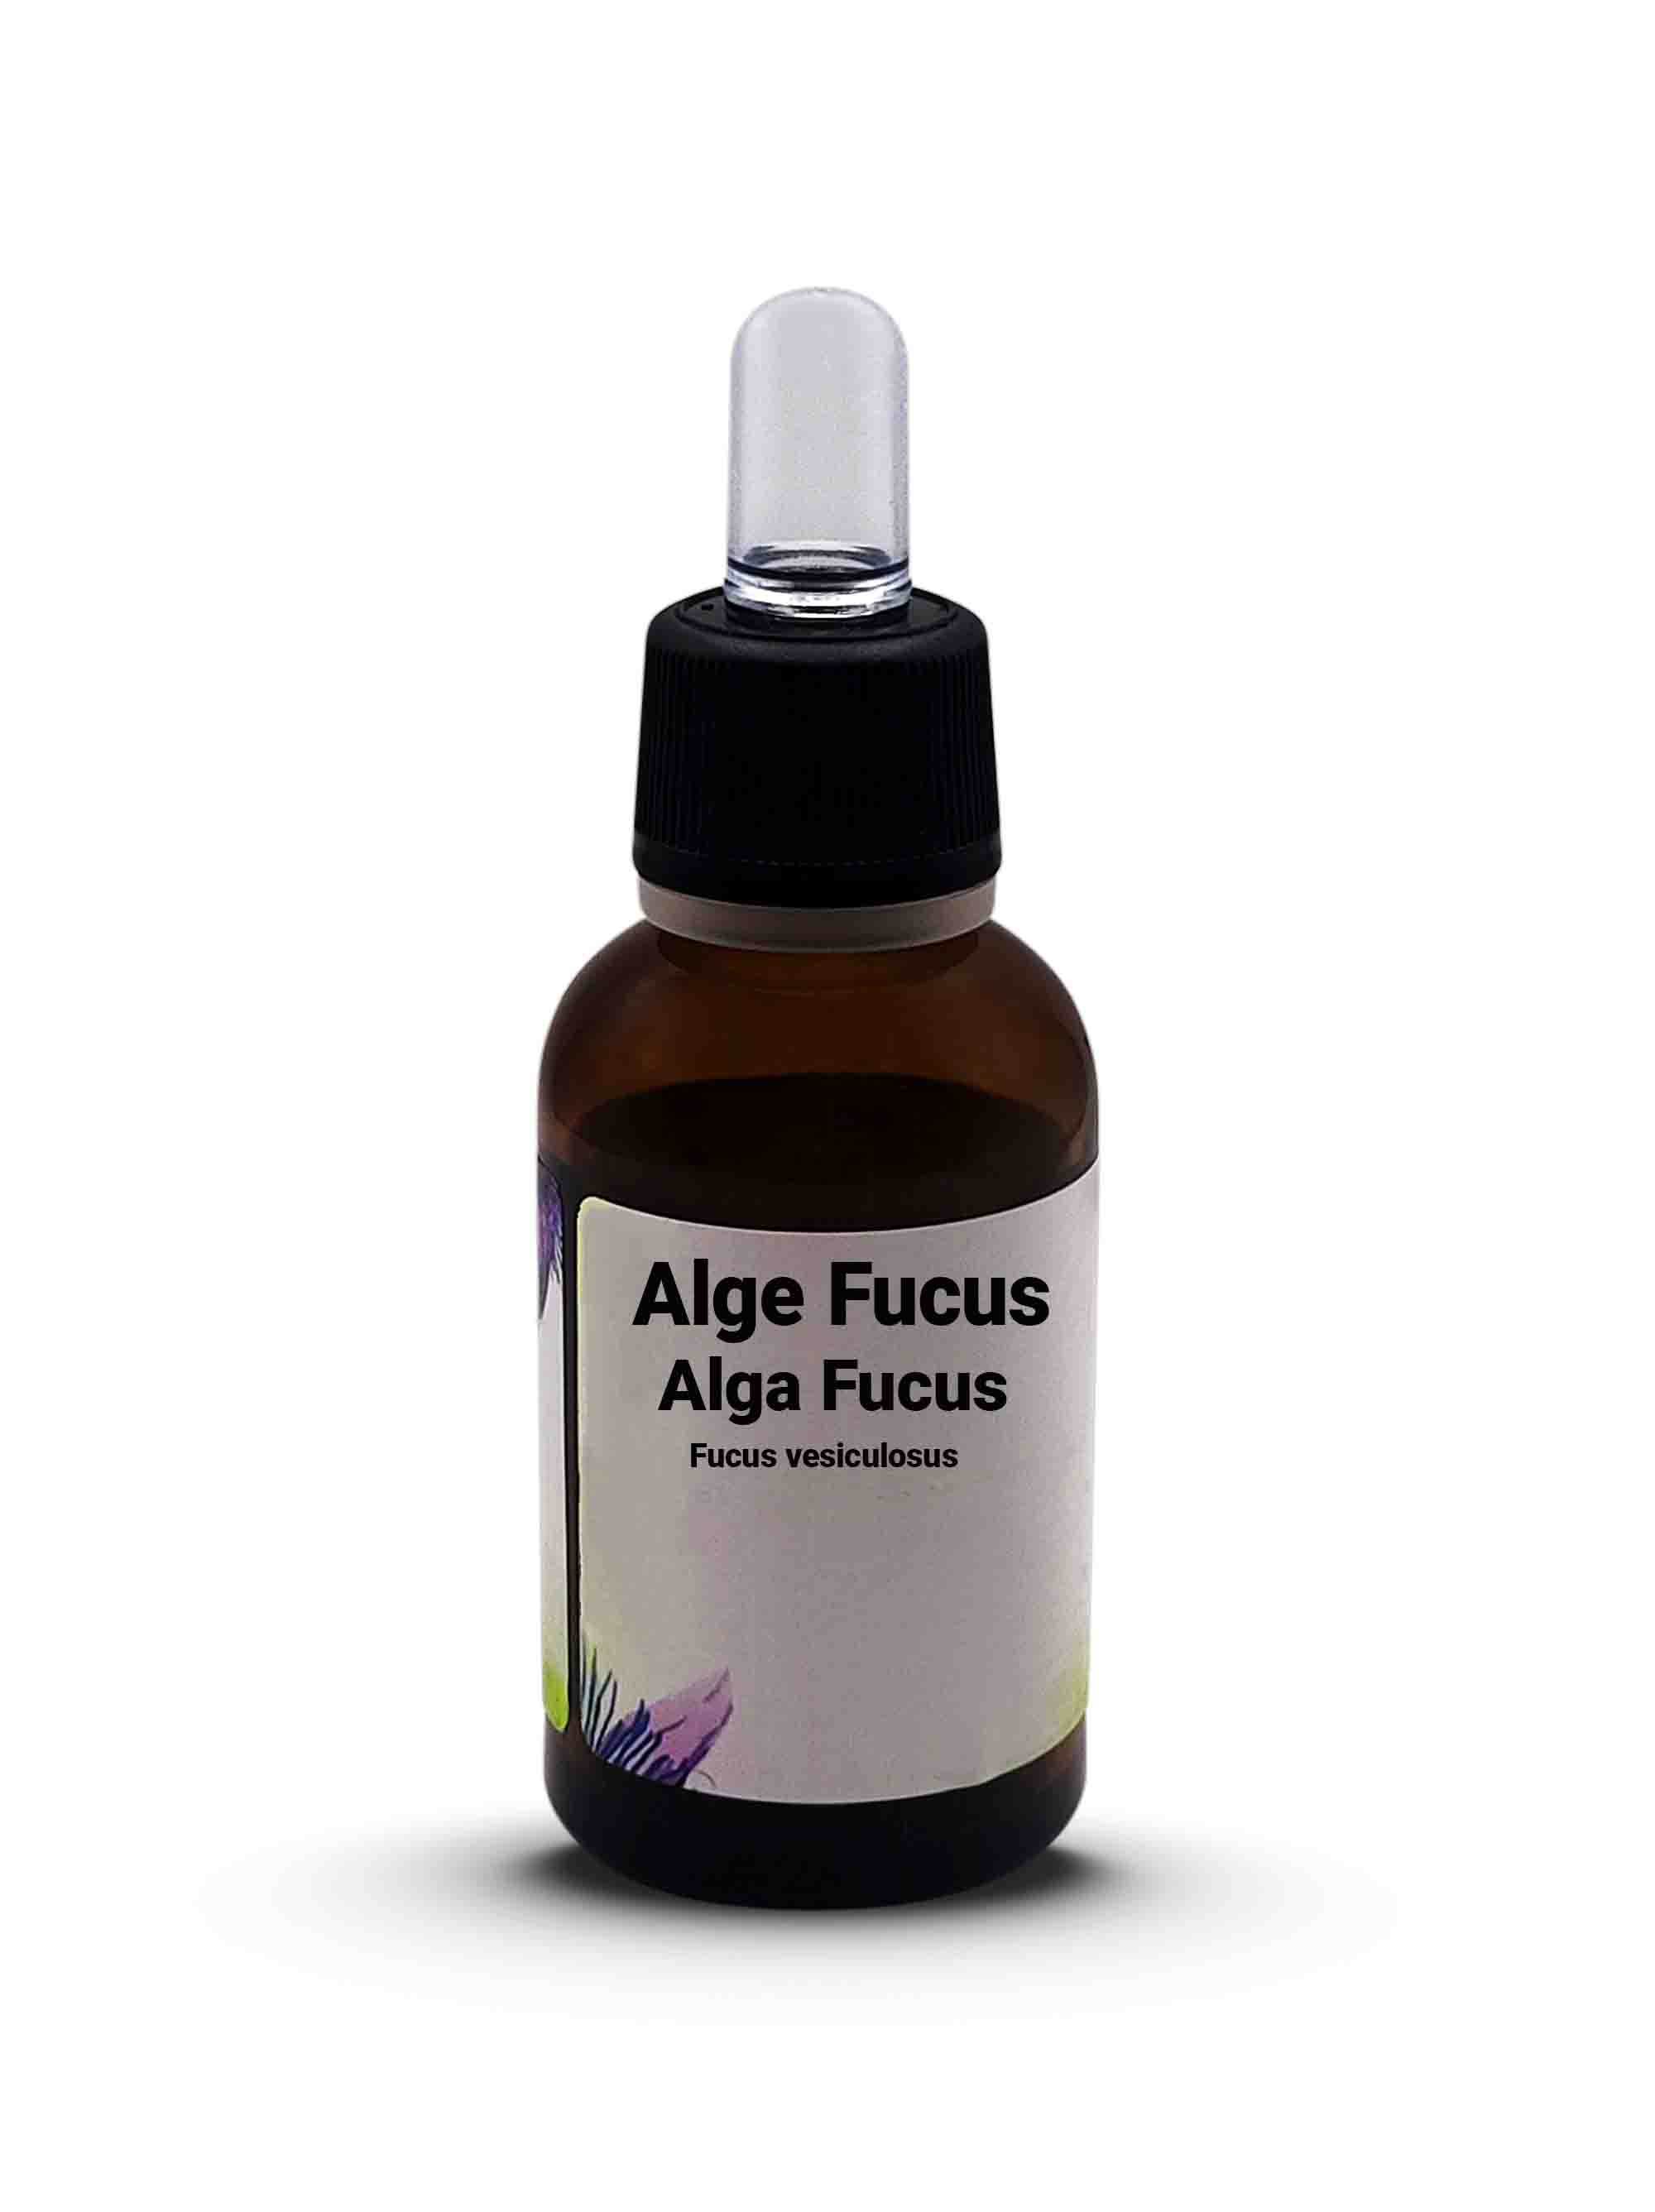 Alge Fucus Alga Fucus  Fucus vesiculosus L. 30 ml